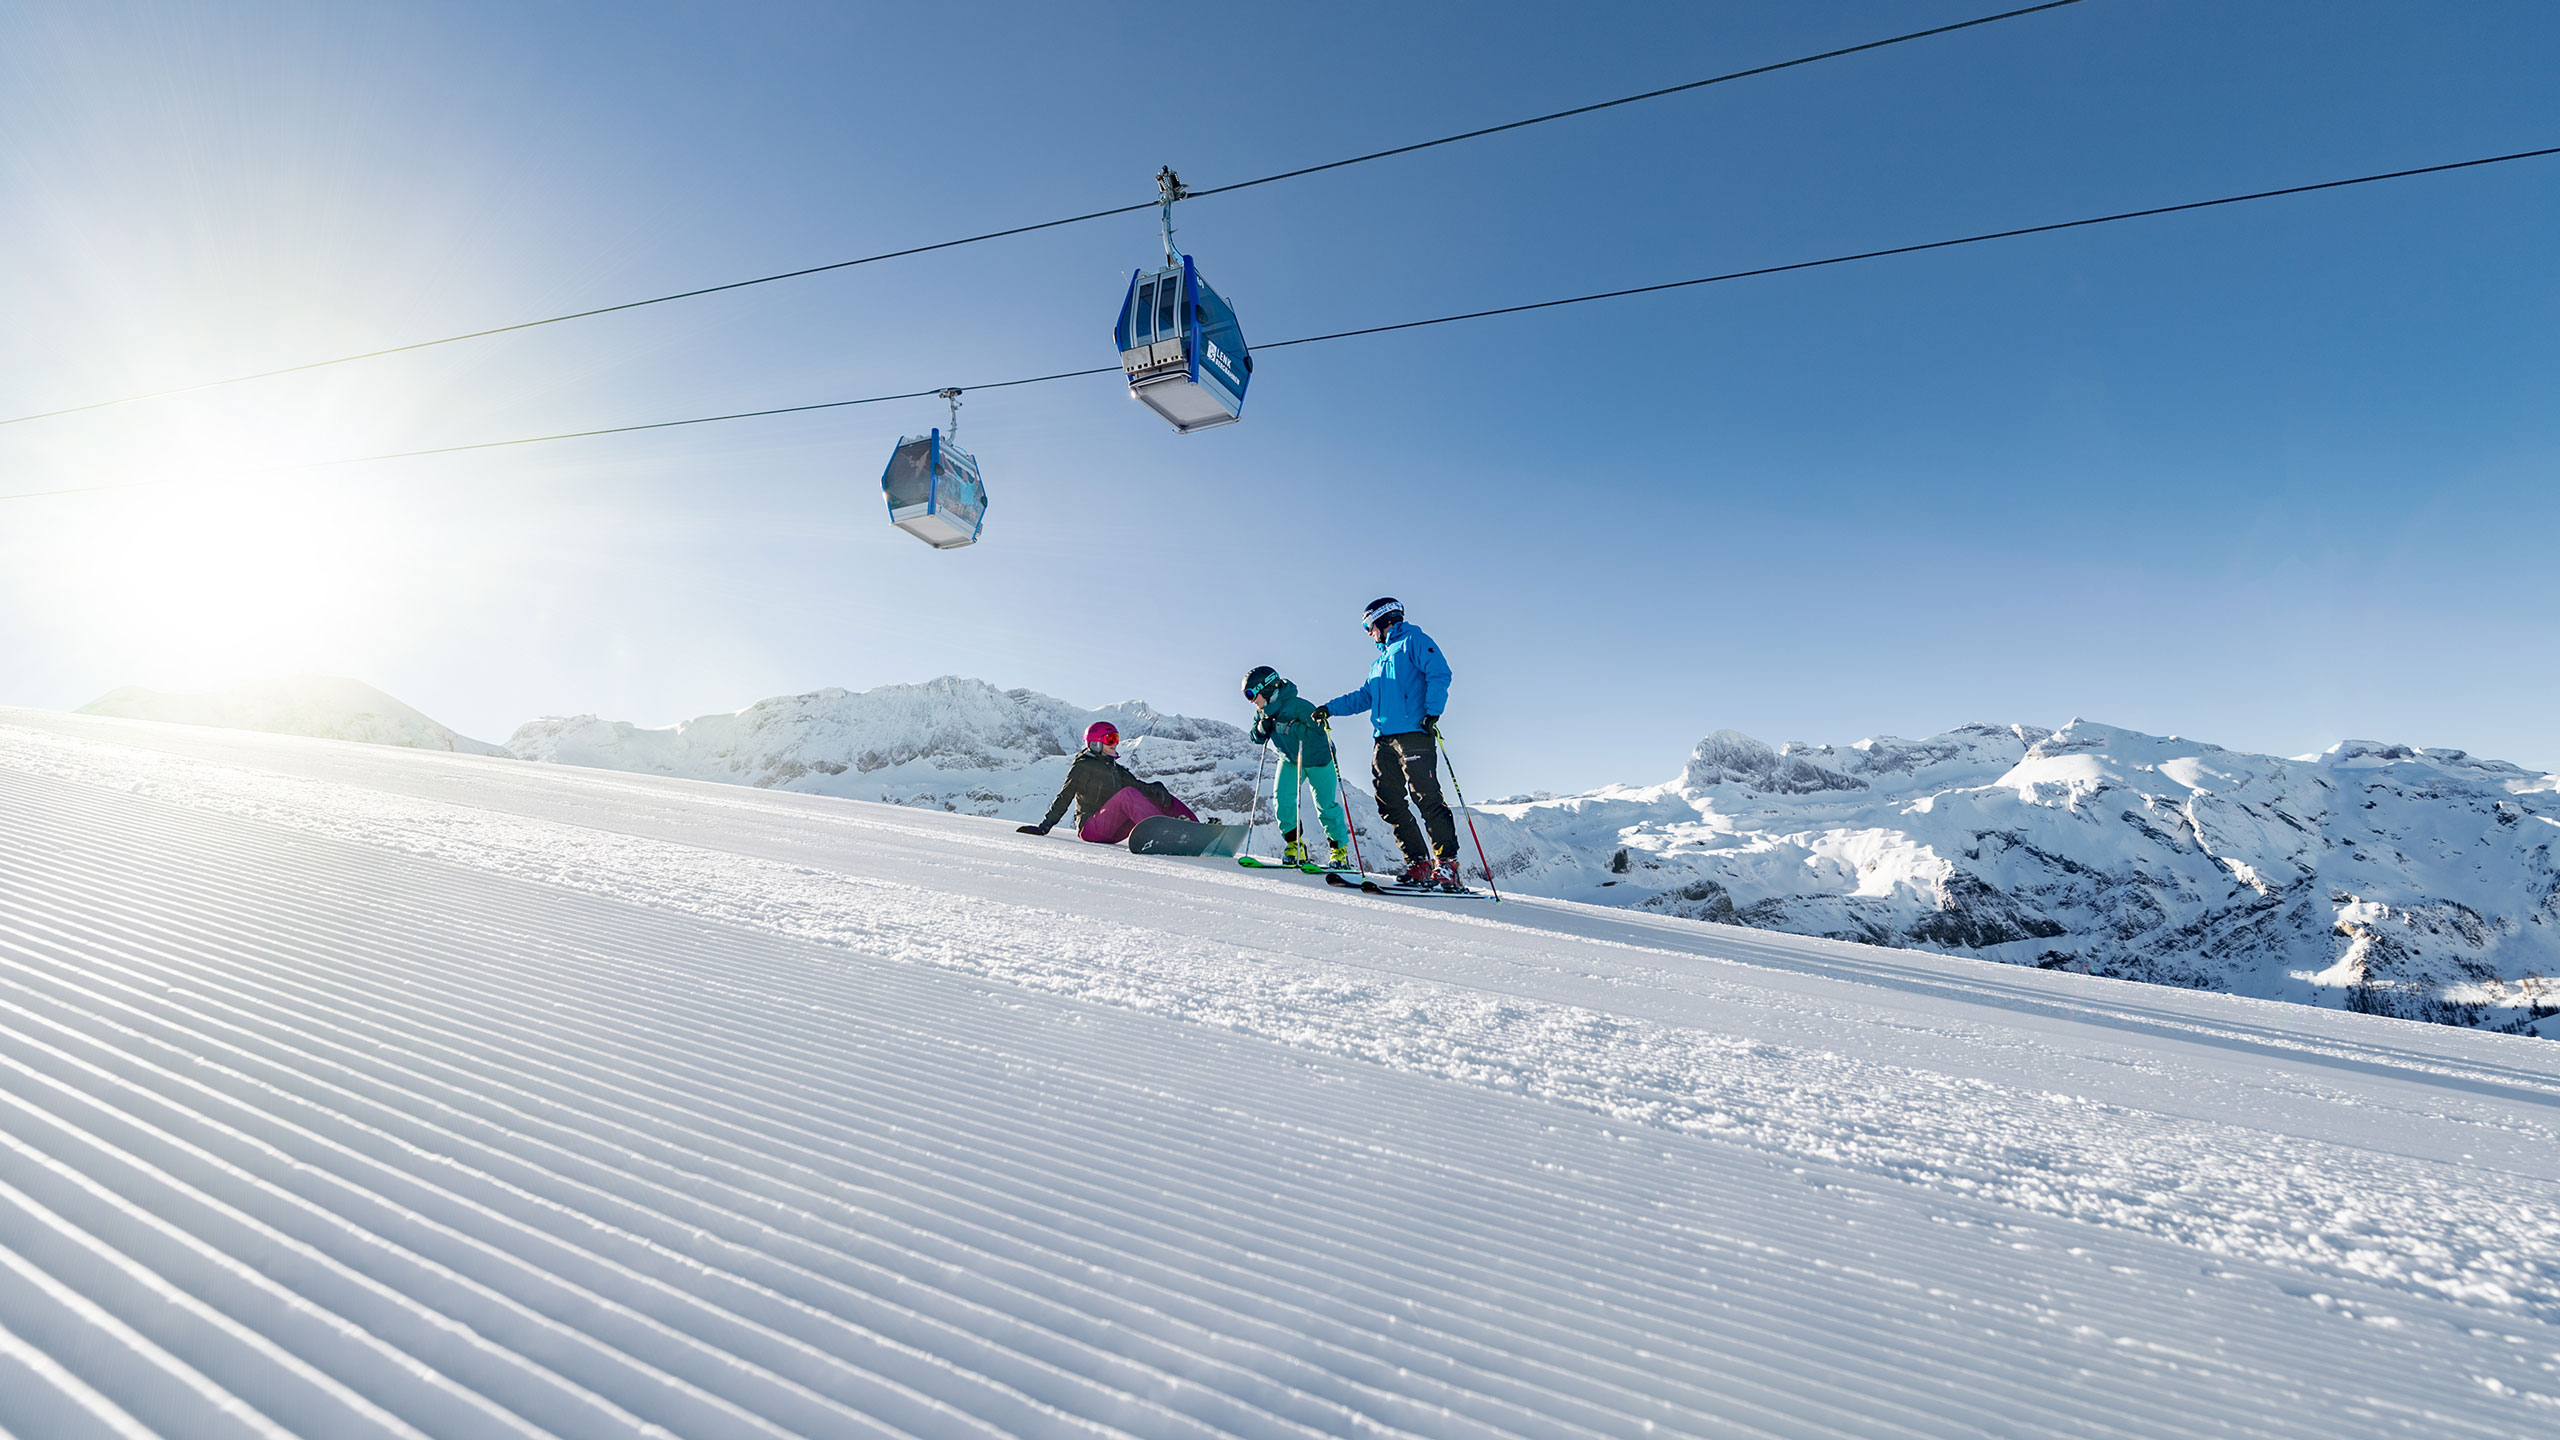 Schneesichere Pisten in der Skiregion Adelboden-Lenk...dänk!